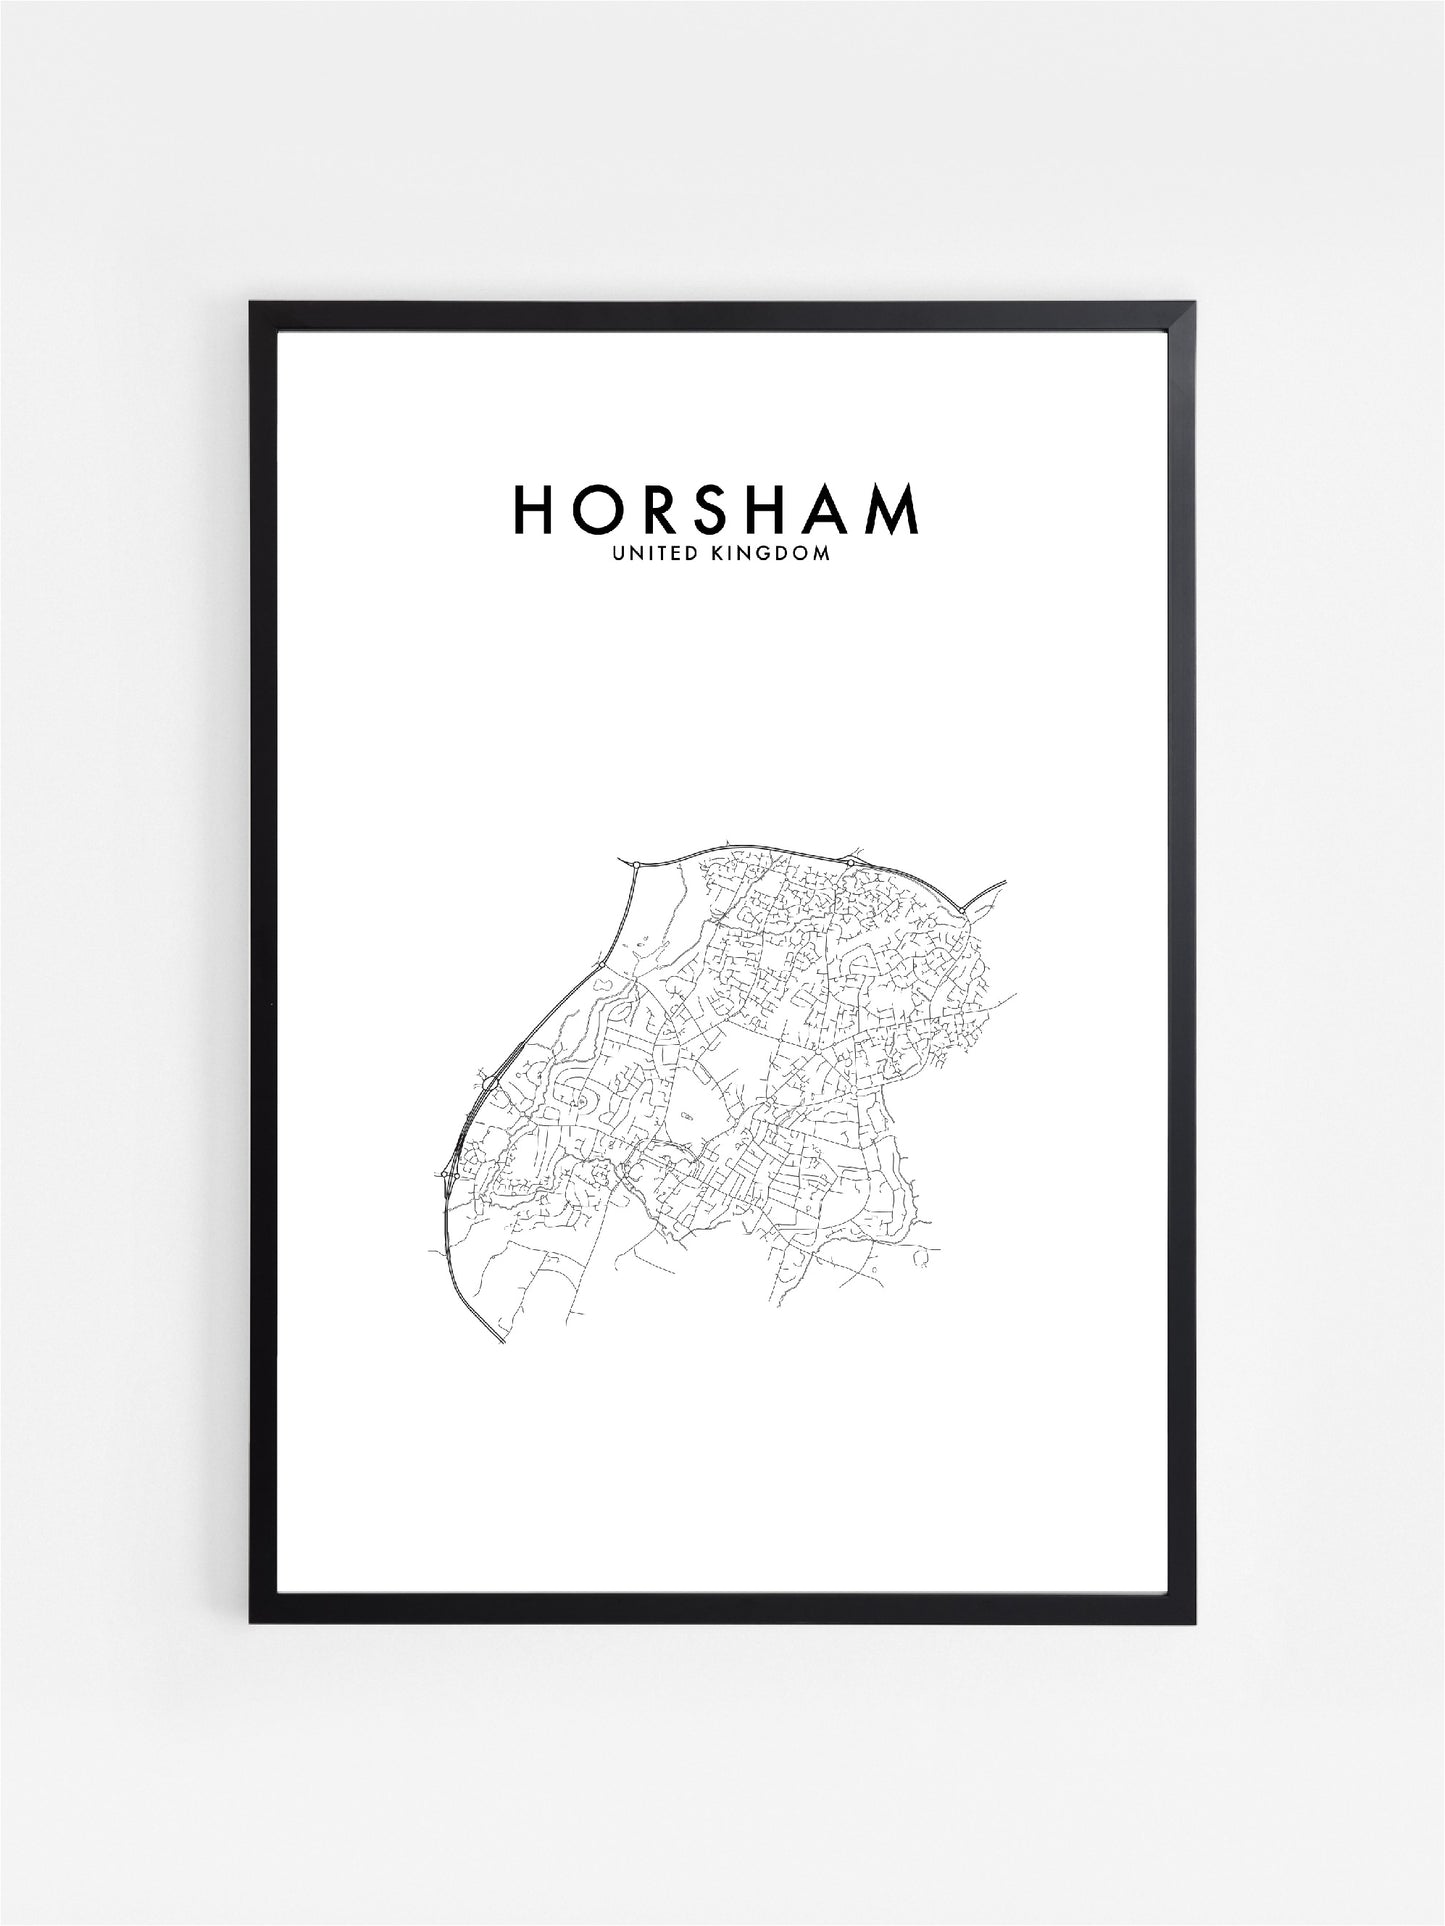 HORSHAM, UK HOMETOWN PRINT